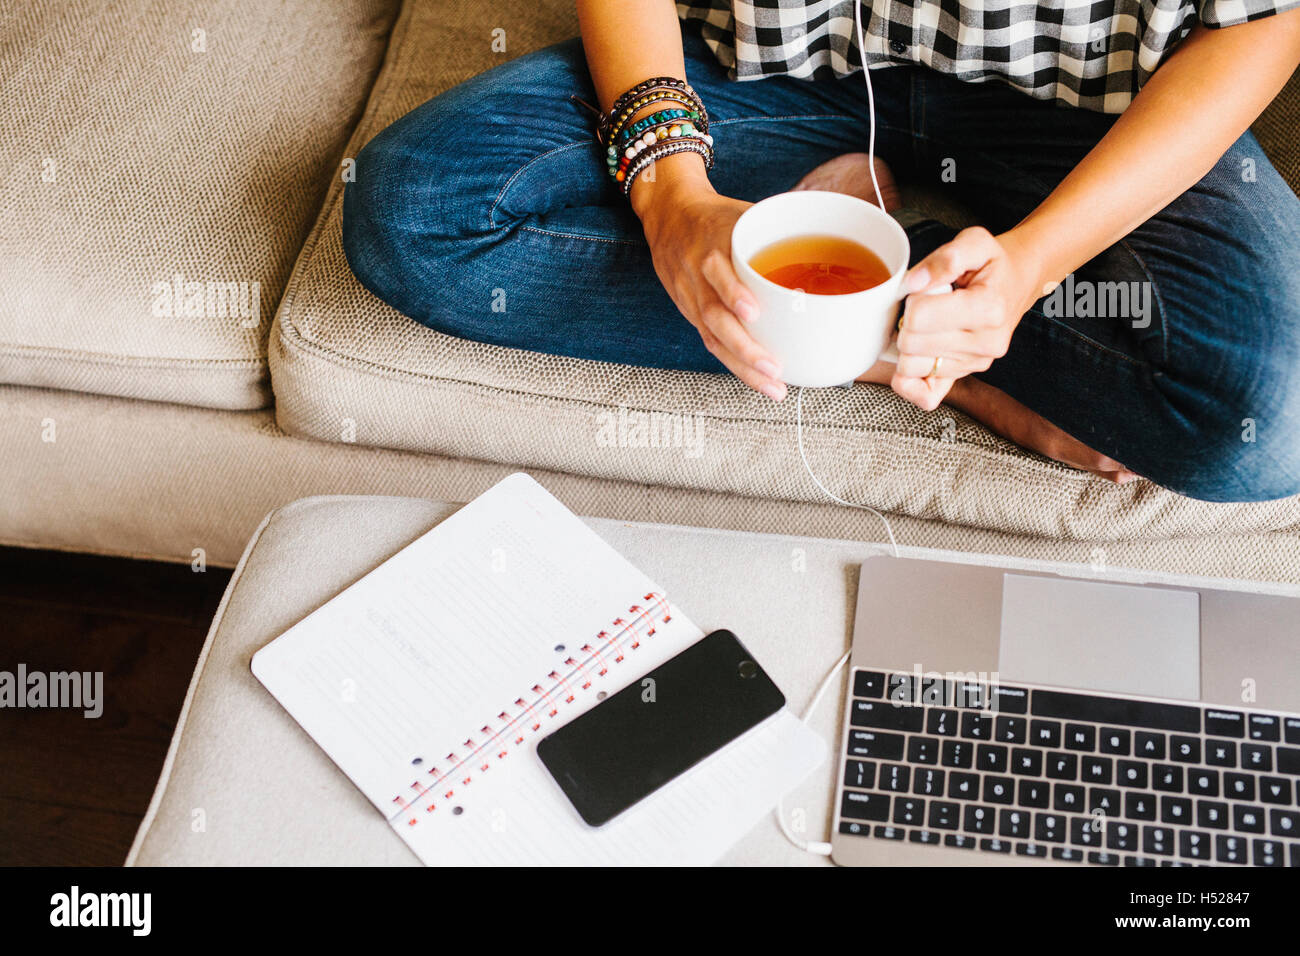 Le port de jeans femme assise sur un canapé en face d'un ordinateur portable, tenant une tasse. Banque D'Images